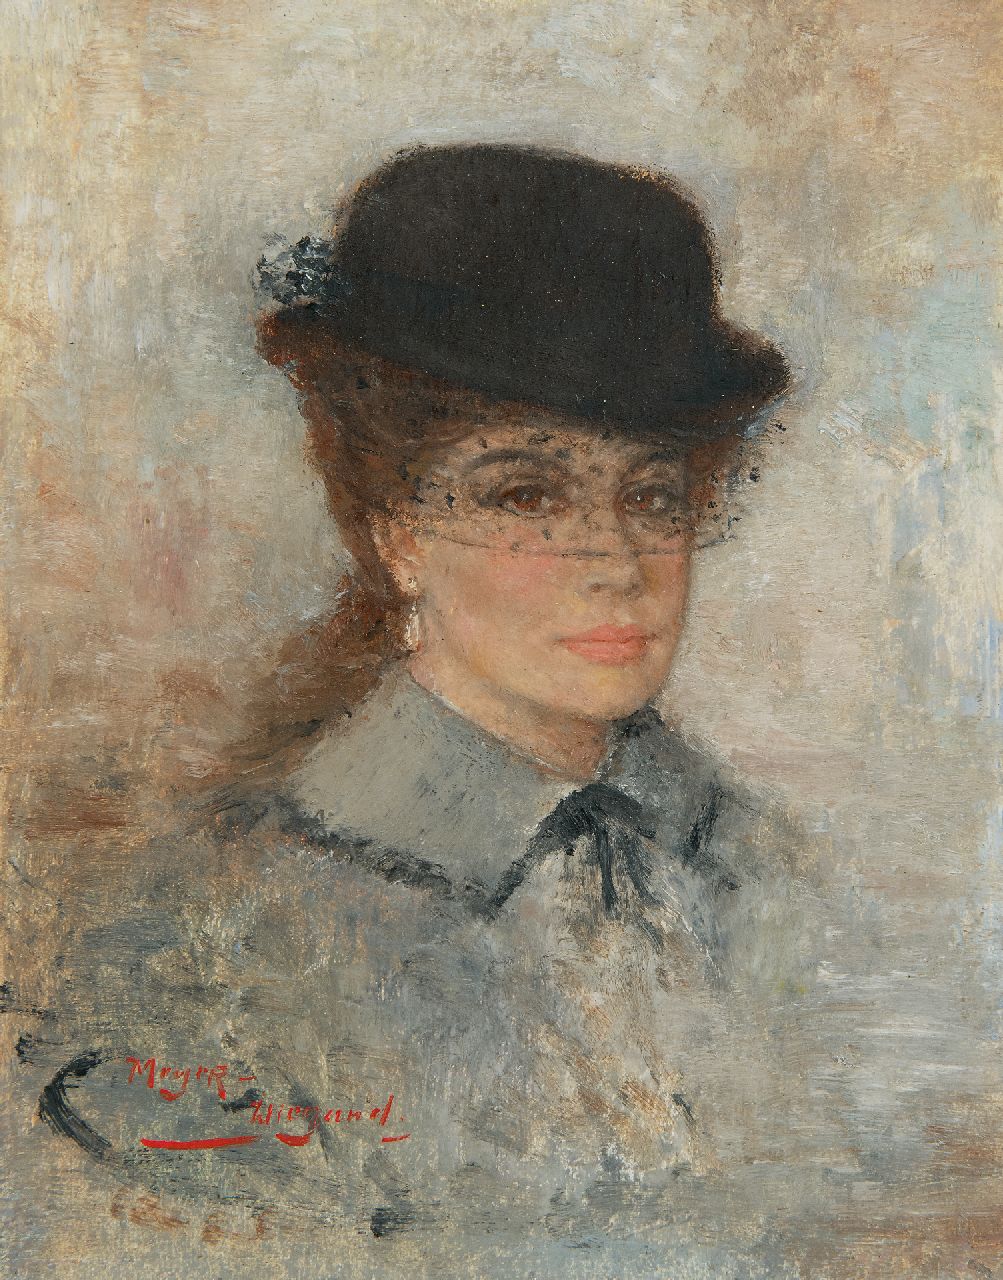 Meyer-Wiegand R.D.  | Rolf Dieter Meyer-Wiegand | Schilderijen te koop aangeboden | Vrouw met hoedje met voile, olieverf op paneel 18,0 x 14,1 cm, gesigneerd linksonder